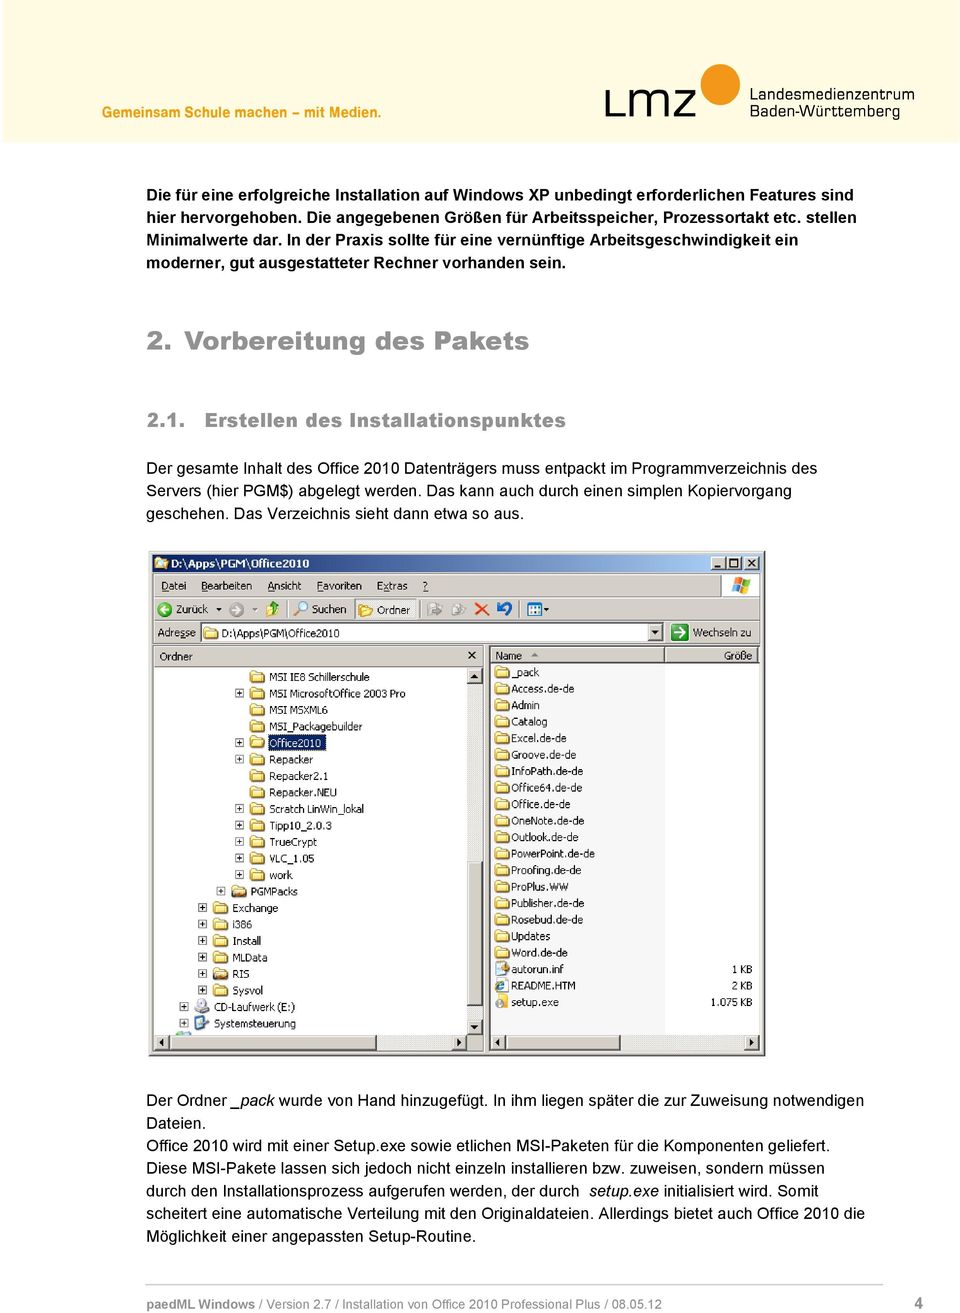 Erstellen des Installationspunktes Der gesamte Inhalt des Office 2010 Datenträgers muss entpackt im Programmverzeichnis des Servers (hier PGM$) abgelegt werden.